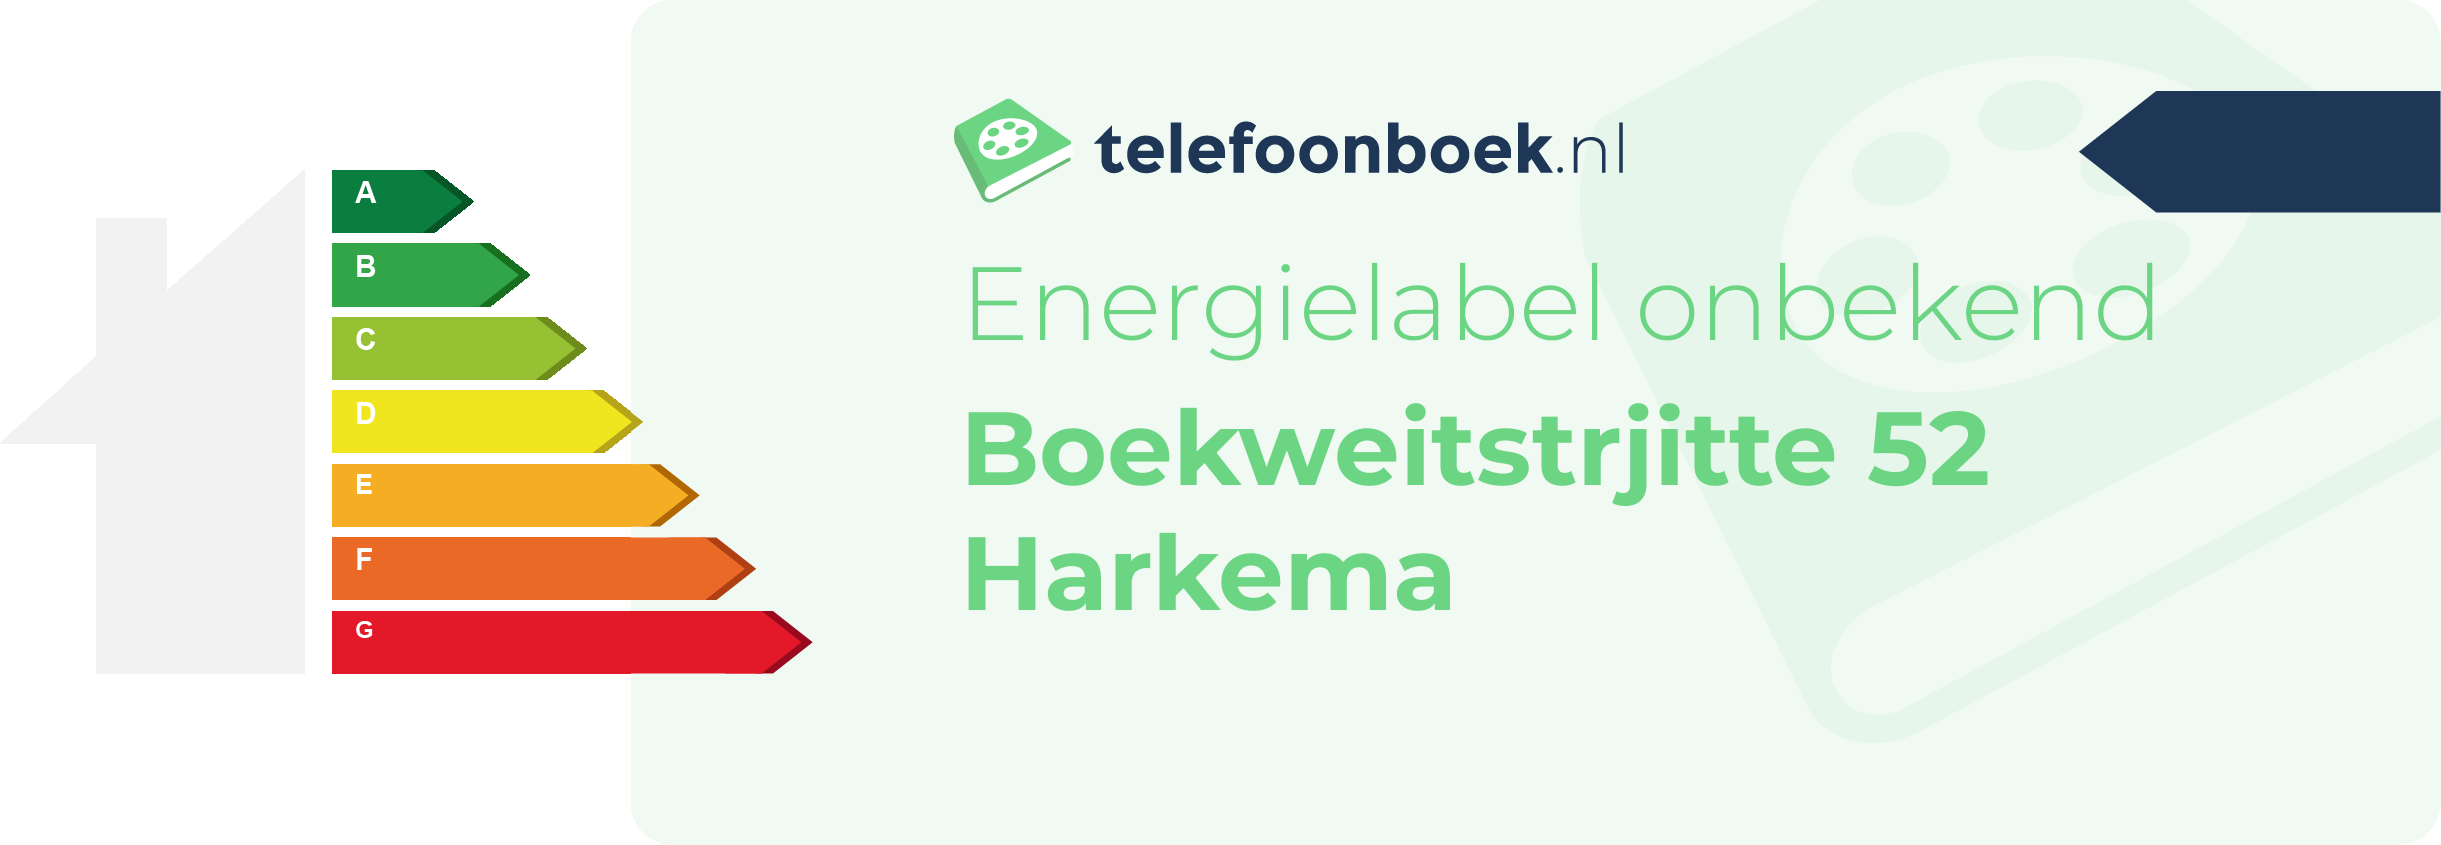 Energielabel Boekweitstrjitte 52 Harkema